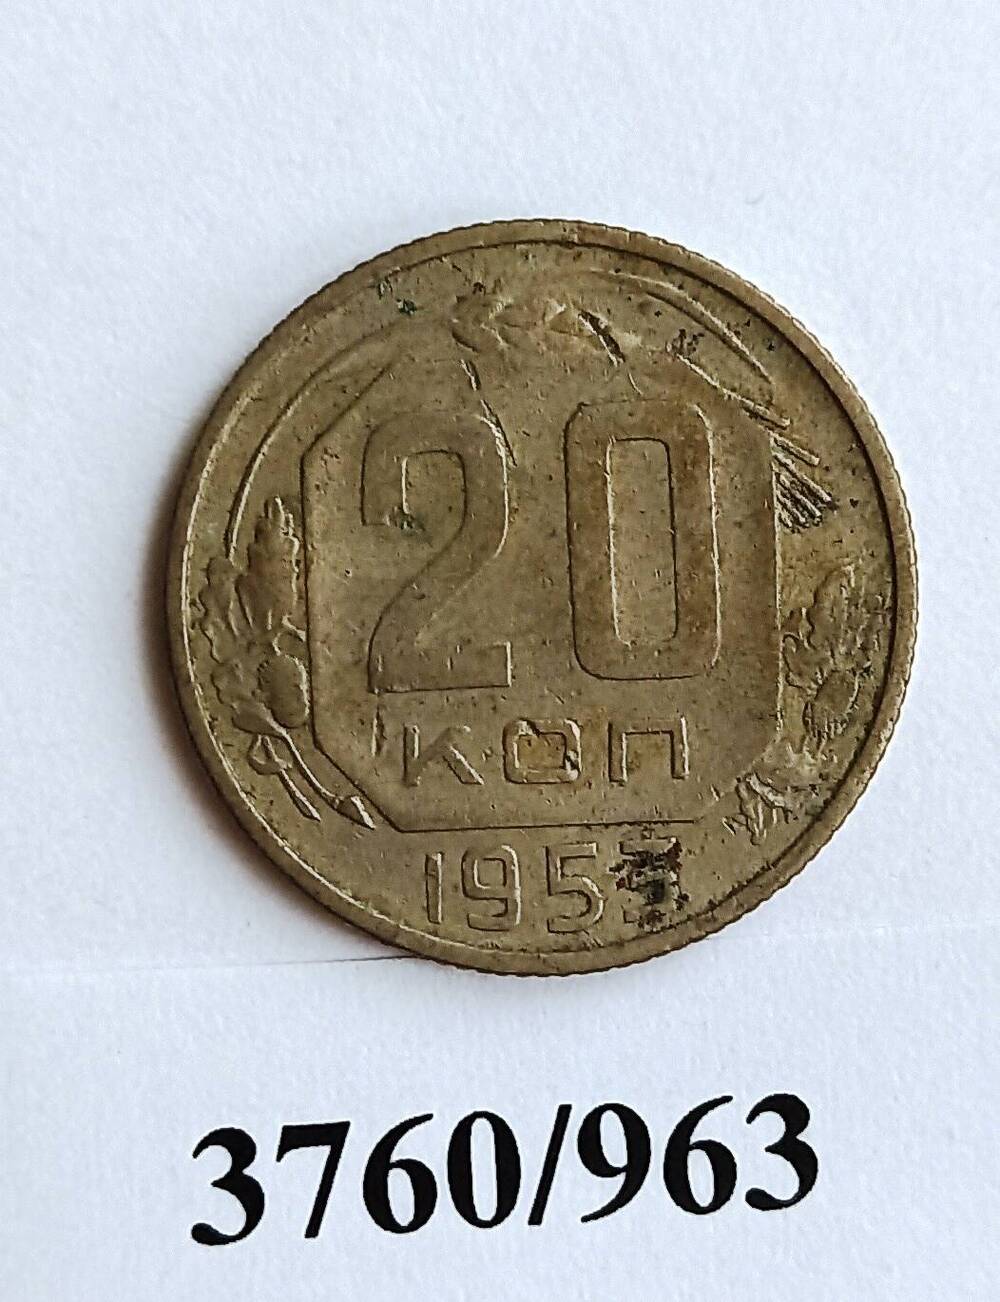 Монета достоинством в 20 копеек 1953 года.